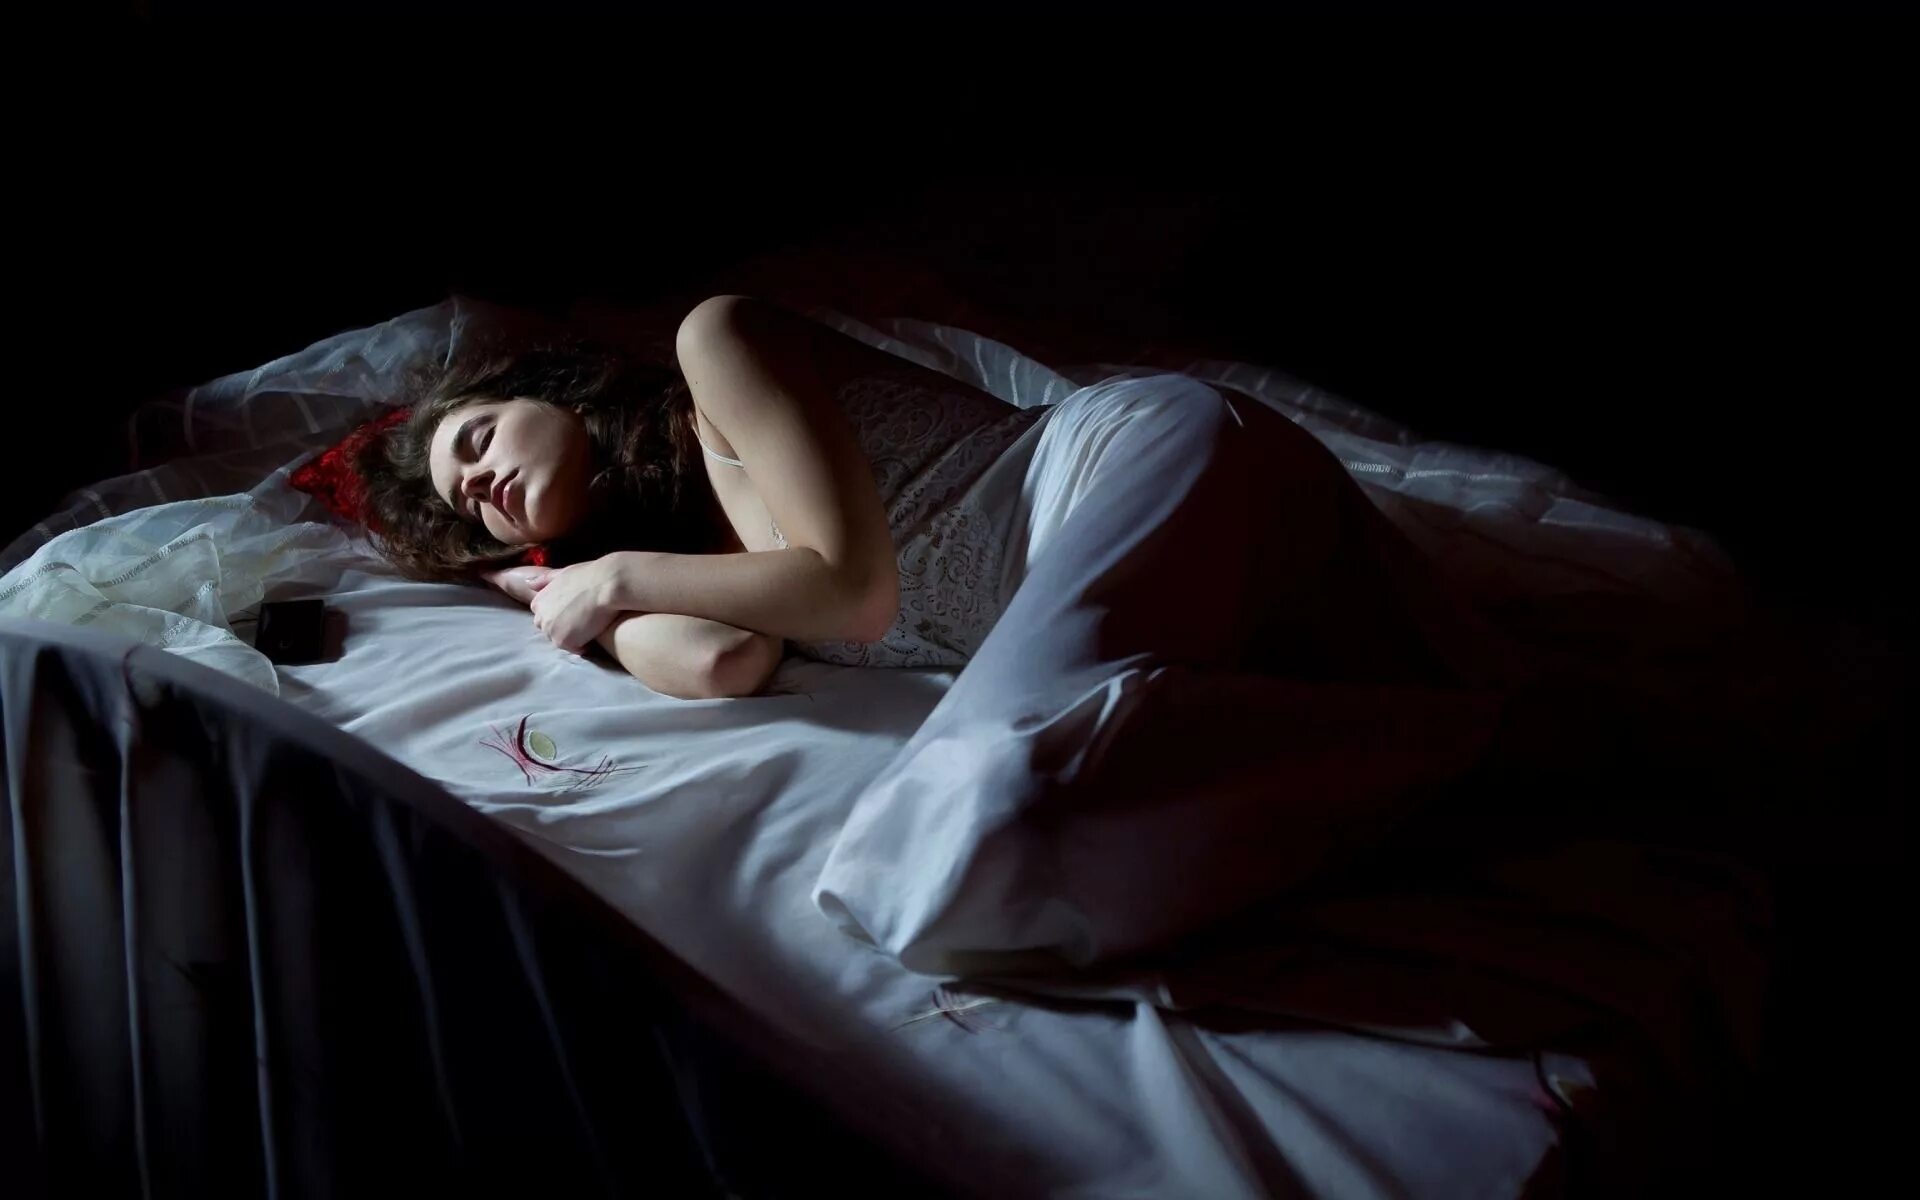 Мужчина в черном во сне. Девушка в кровати ночью.